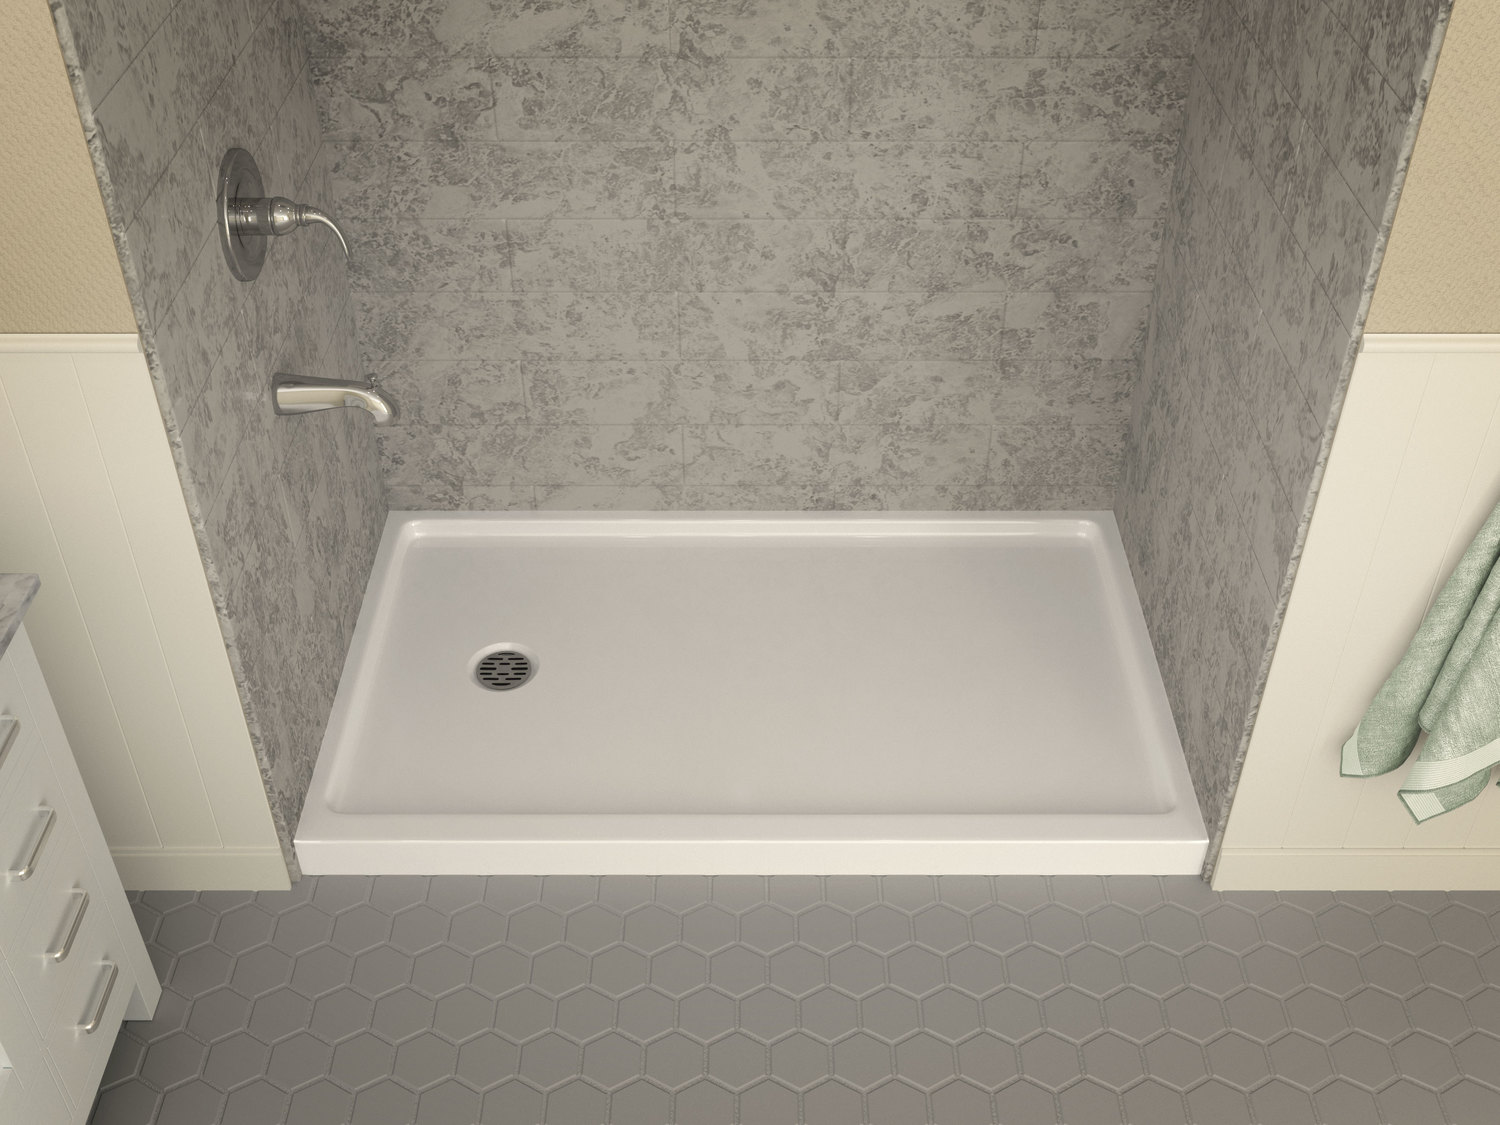 in floor shower drain Anzzi SHOWER - Shower Bases - Single Threshold White